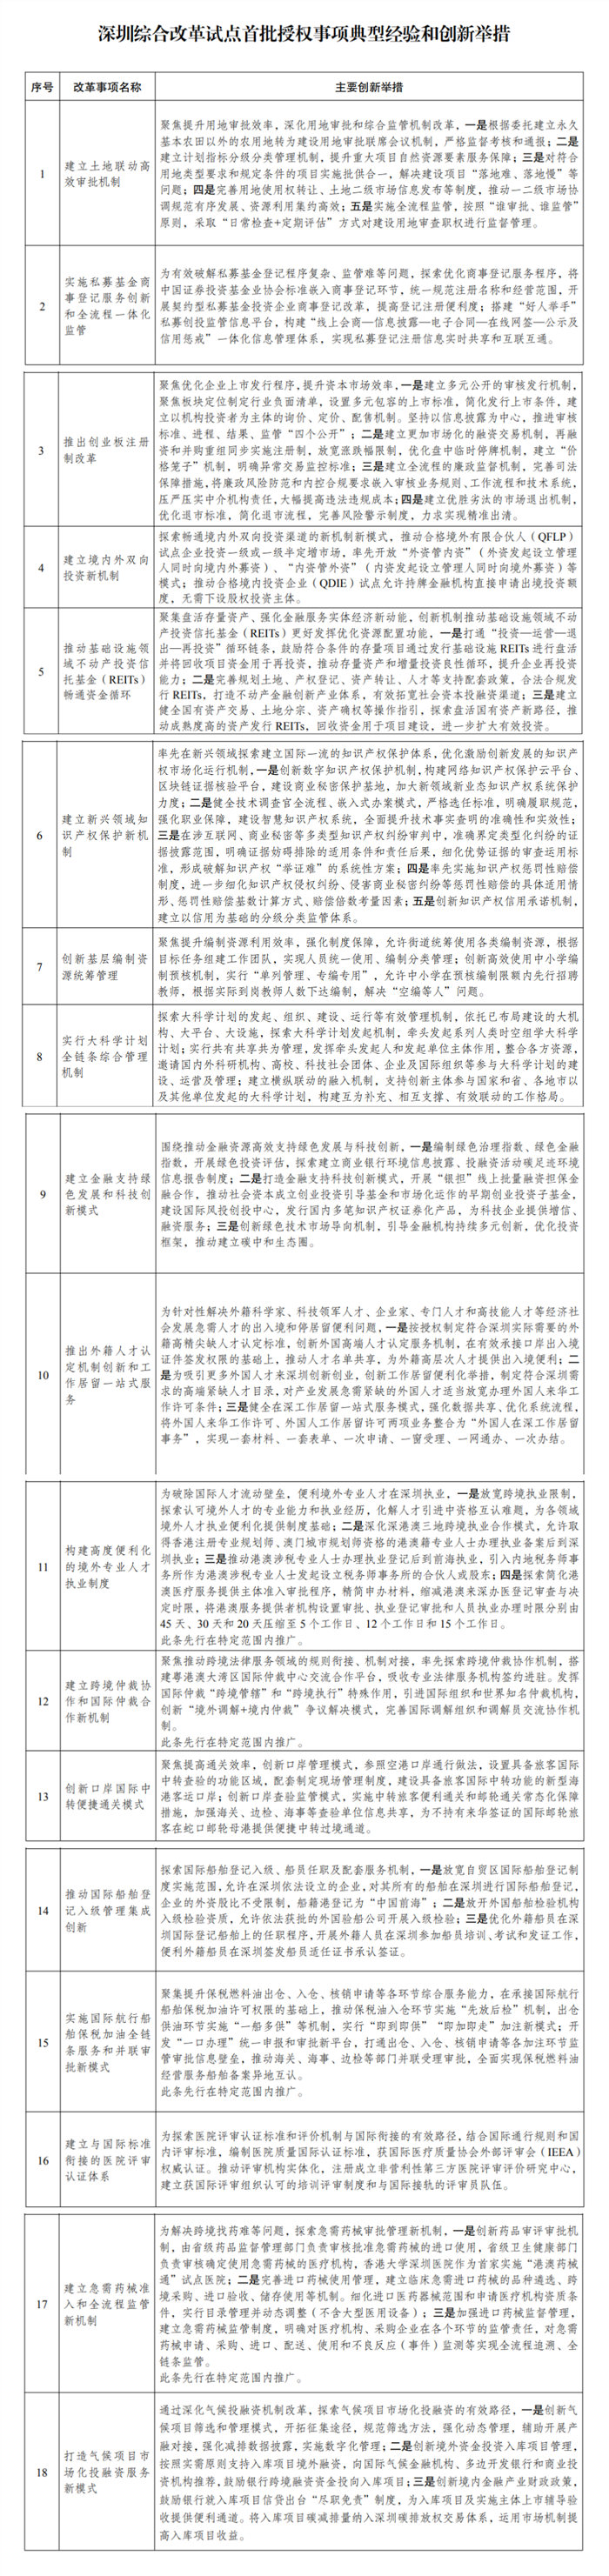 推广借鉴深圳综合改革试点18条典型经验和创新举措